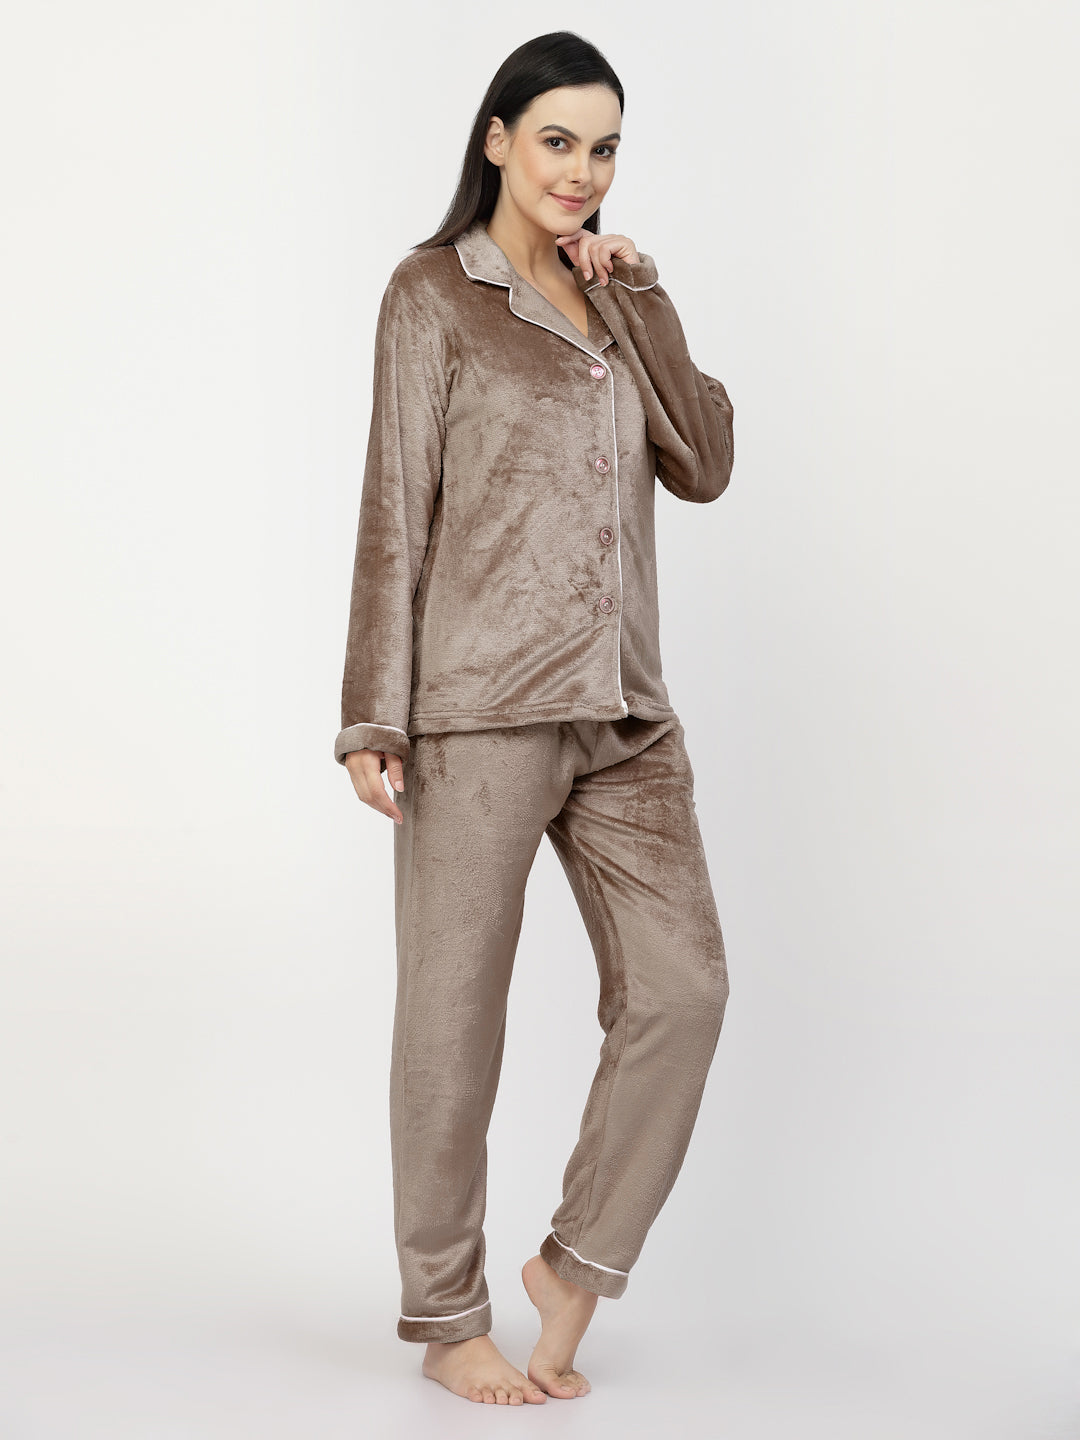 Men's Pajamas Women Nightdress Women Pyjamas Sleep Suit Kids Pajamas -  China Men's Pajamas and Women Nightdress price | Made-in-China.com